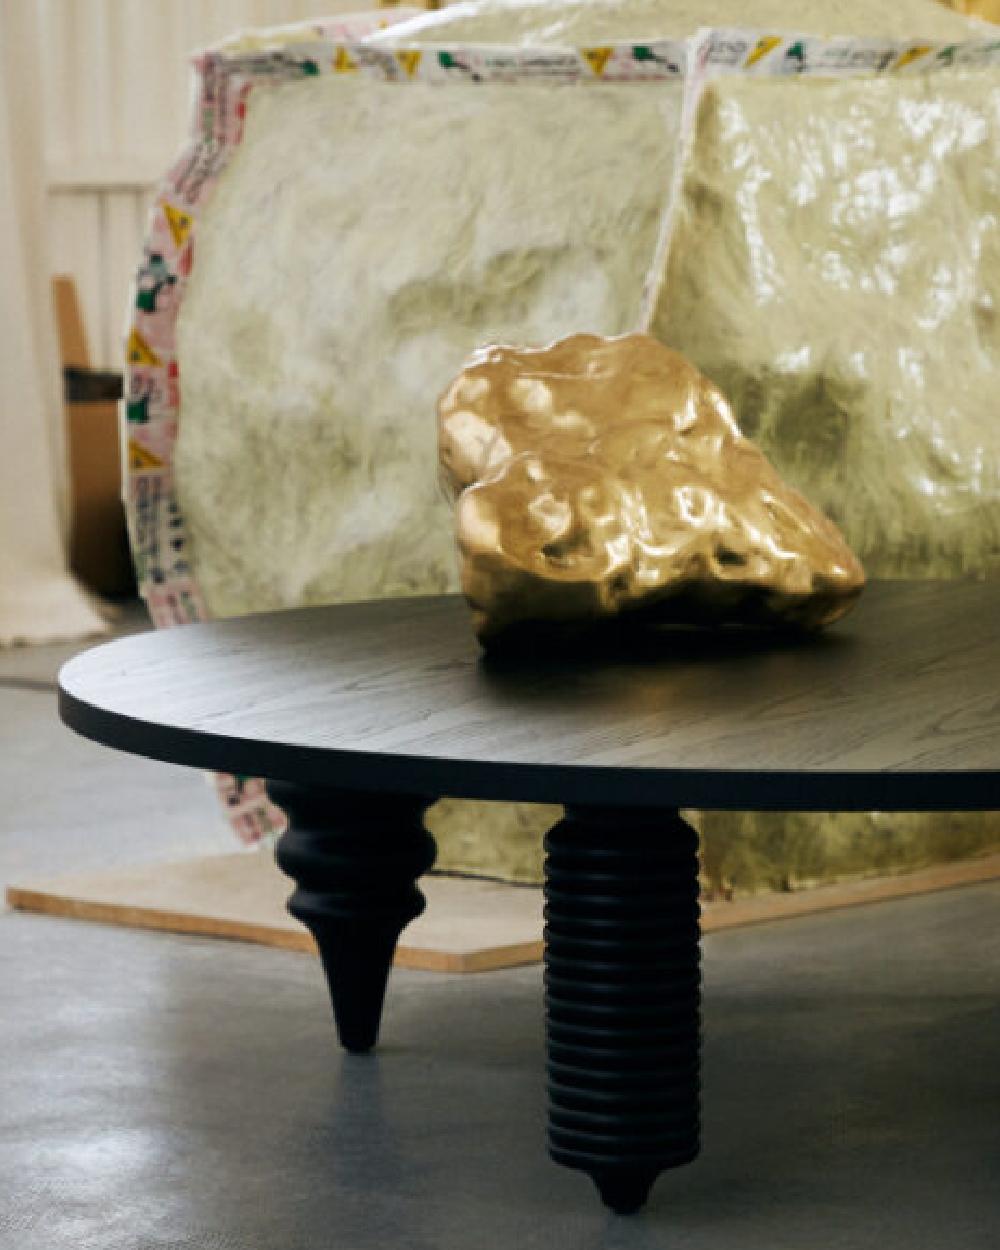 La table basse Multileg est fabriquée en frêne naturel avec une laque brillante surmontée d'un verre ou d'une finition peinte à pores ouverts. Il est fonctionnel, unique et incontournable.
Jaime Hayon a introduit le concept Multileg dans la table